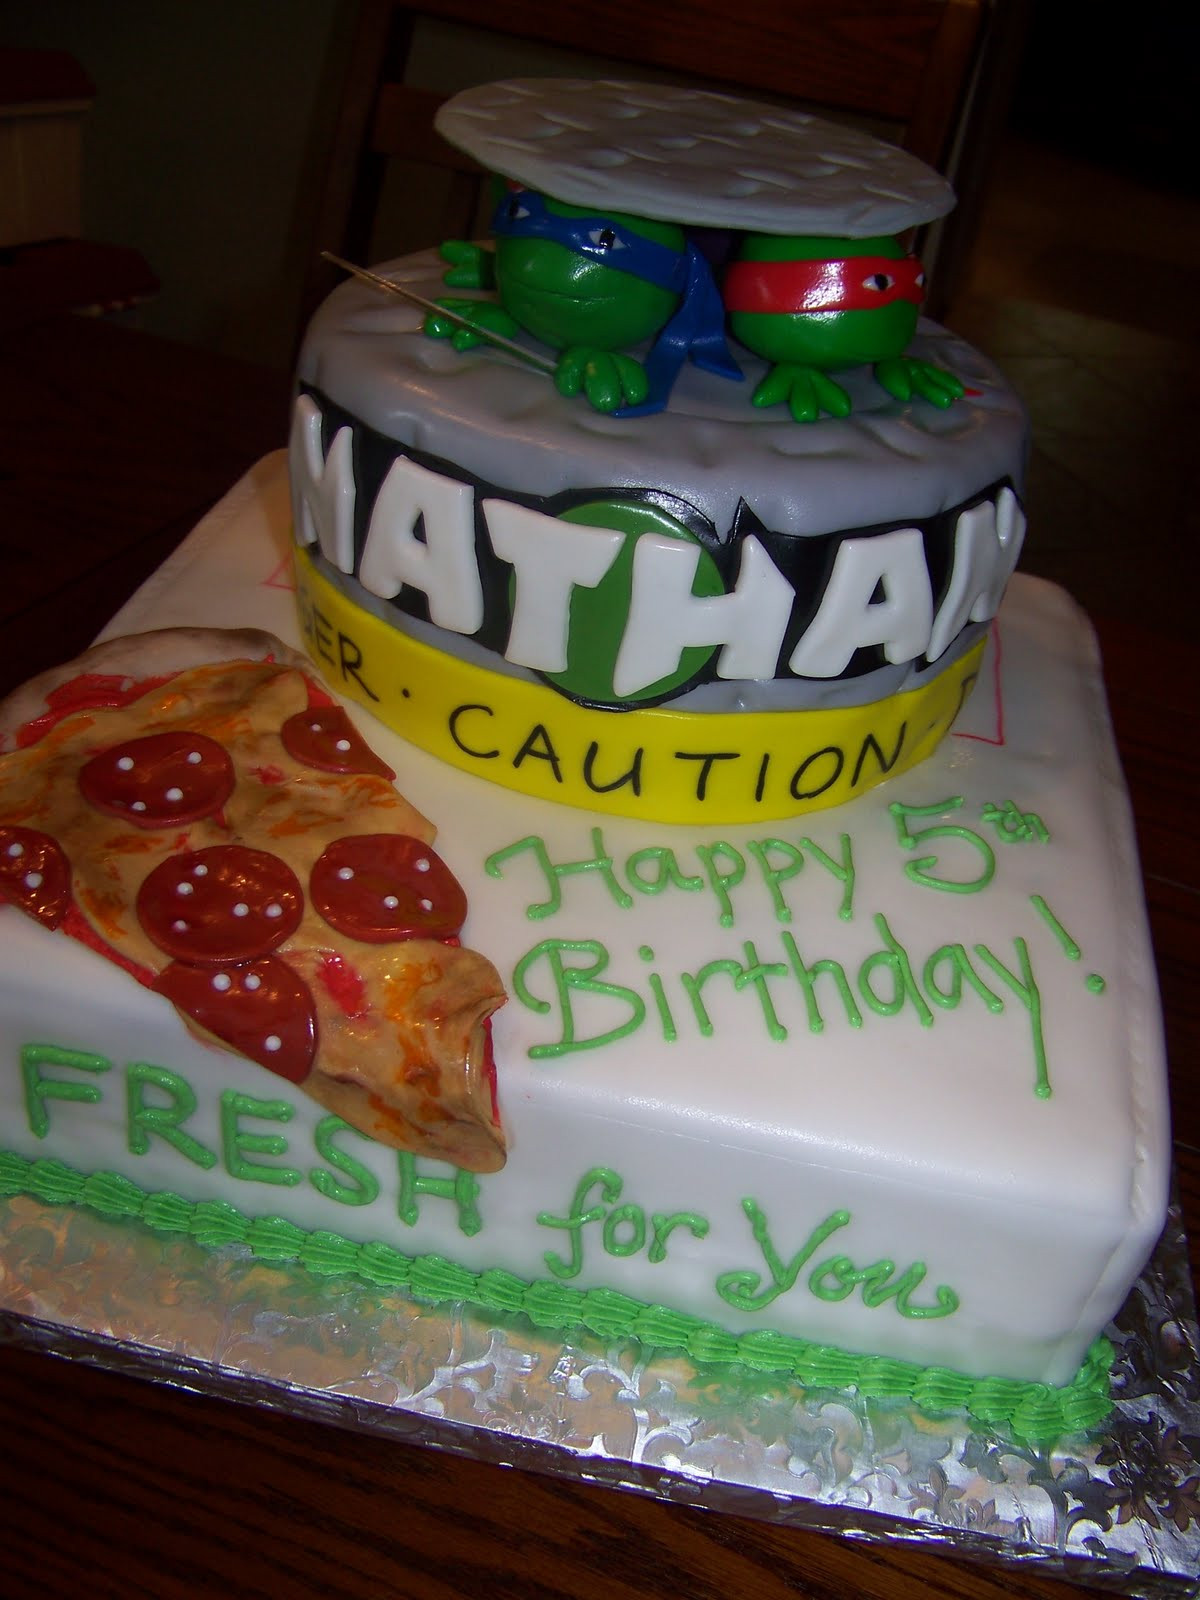 Best ideas about Ninja Turtles Birthday Cake
. Save or Pin Plumeria Cake Studio Teenage Mutant Ninja Turtles Now.